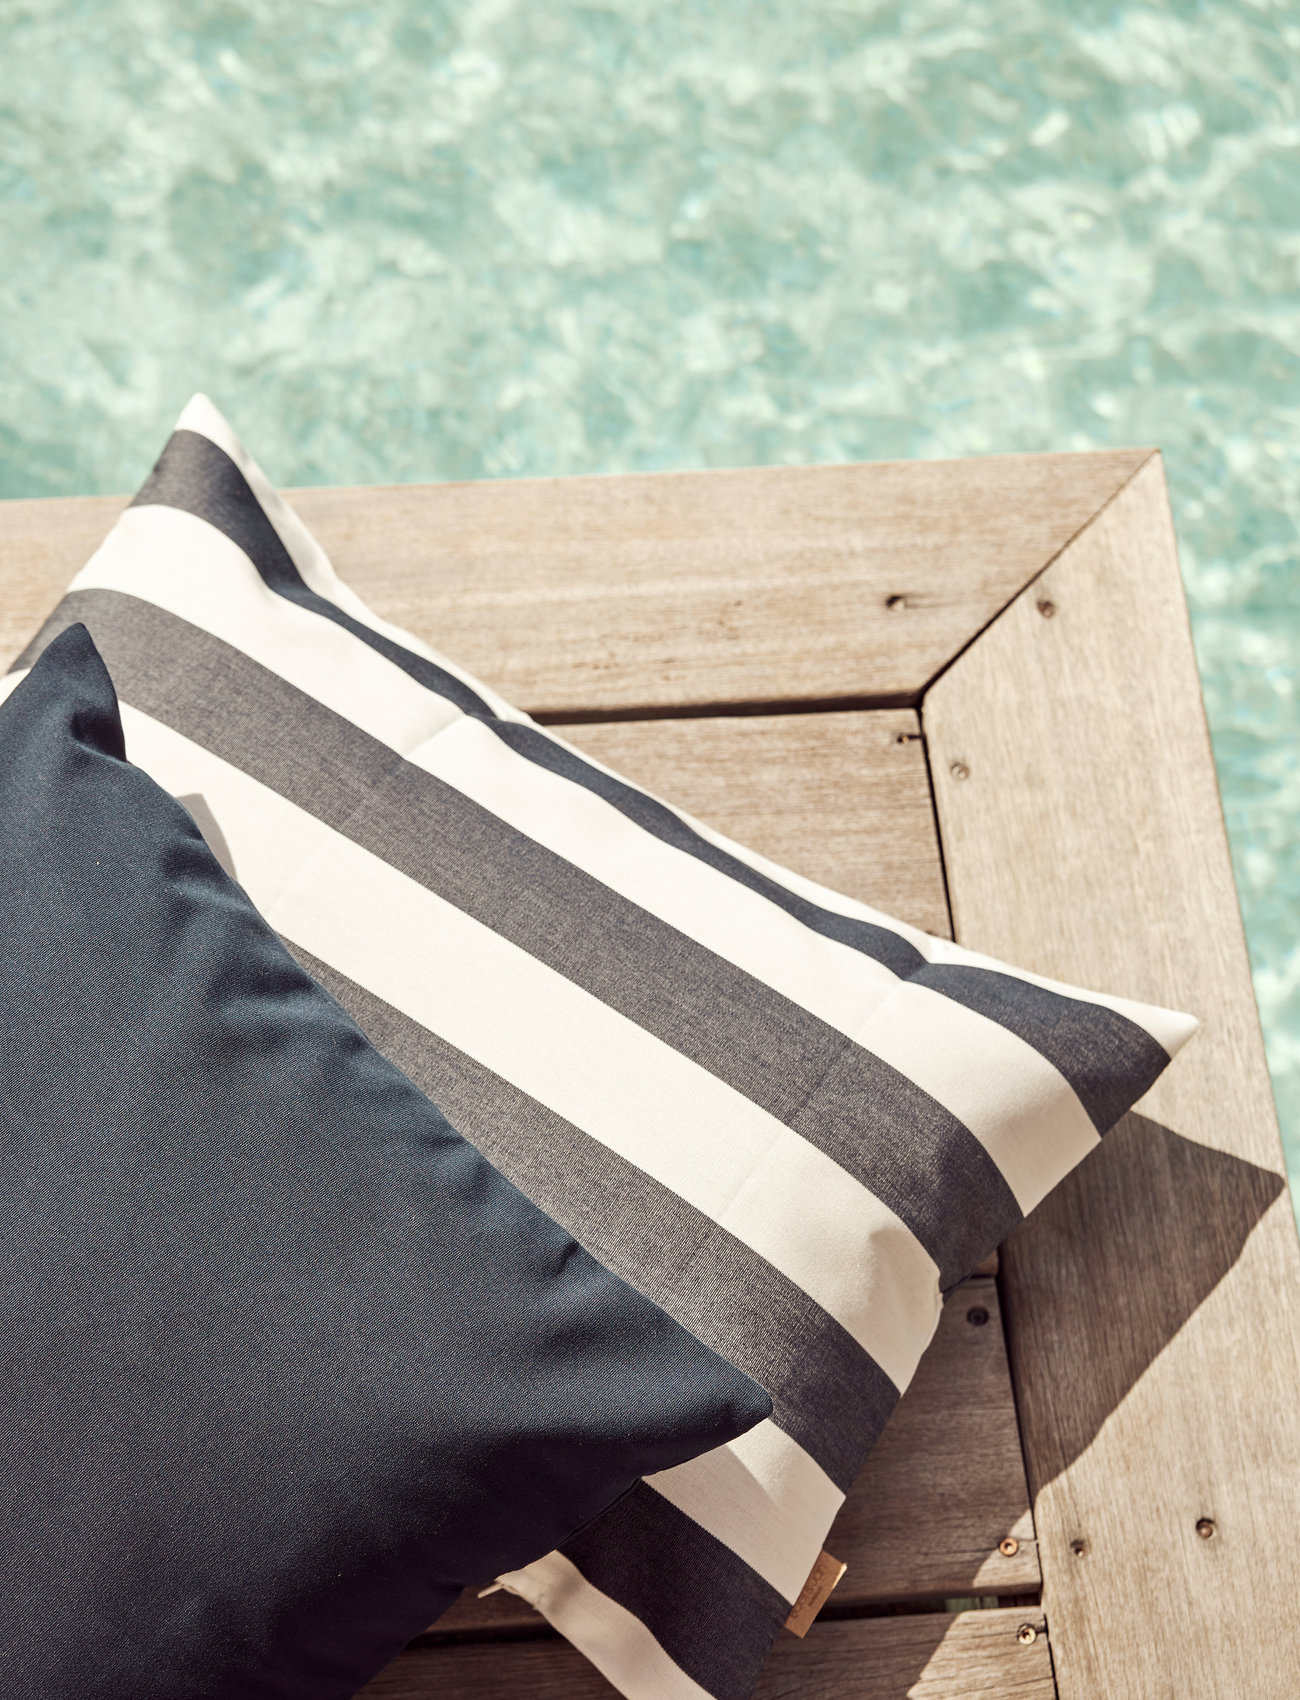 Boel & Jan - Cushion cover - Outdoor stripe - cushion covers - blue - 1